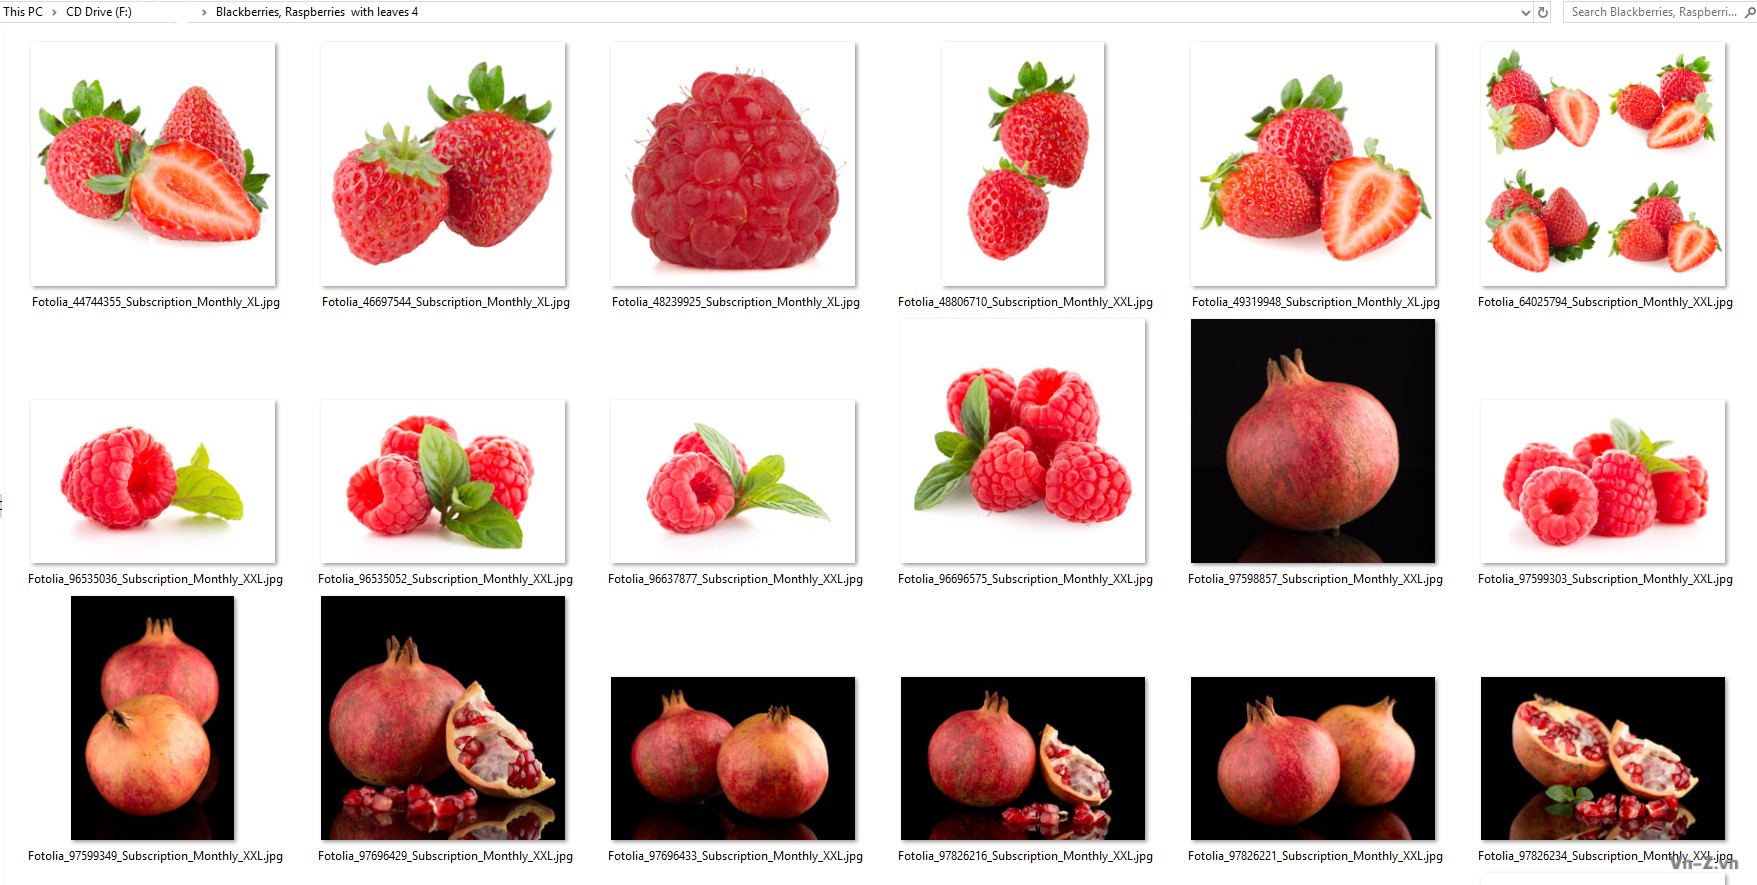 032-Blackberries-Raspberries-with-leaves-4.jpg